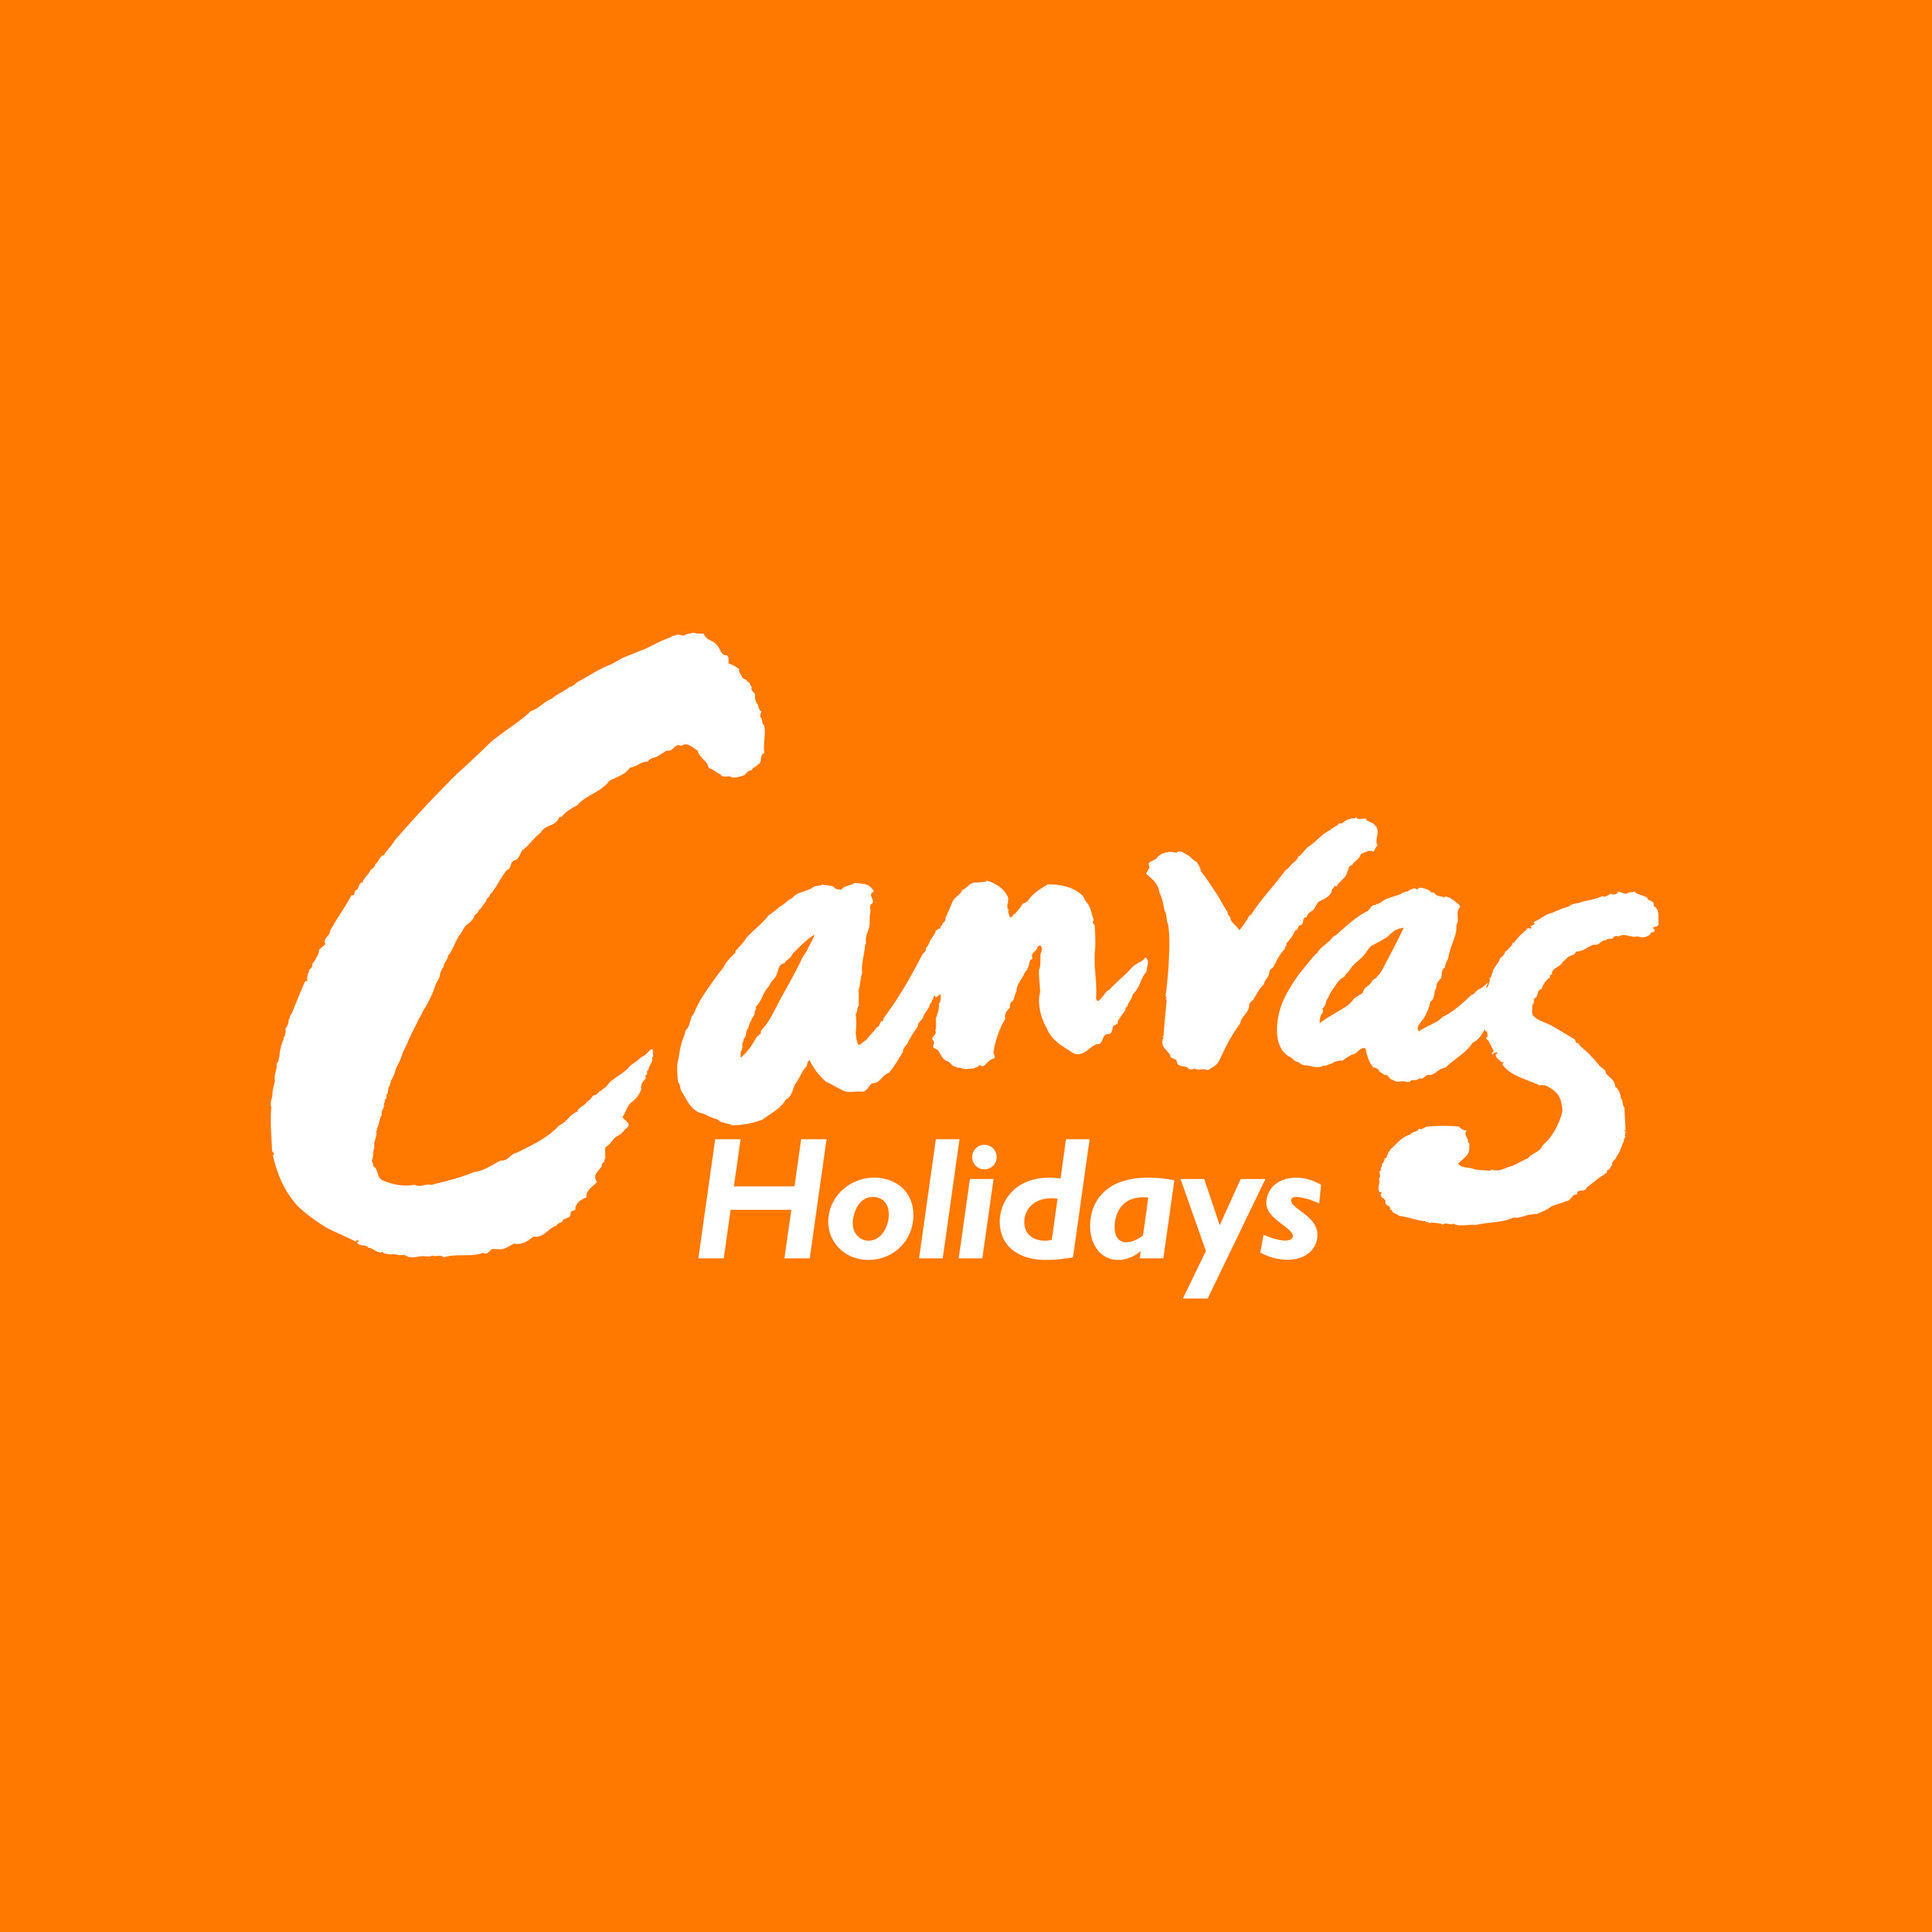 Orange Yellow and White Logo - Canvas Holidays white on orange logo - JuggleMum